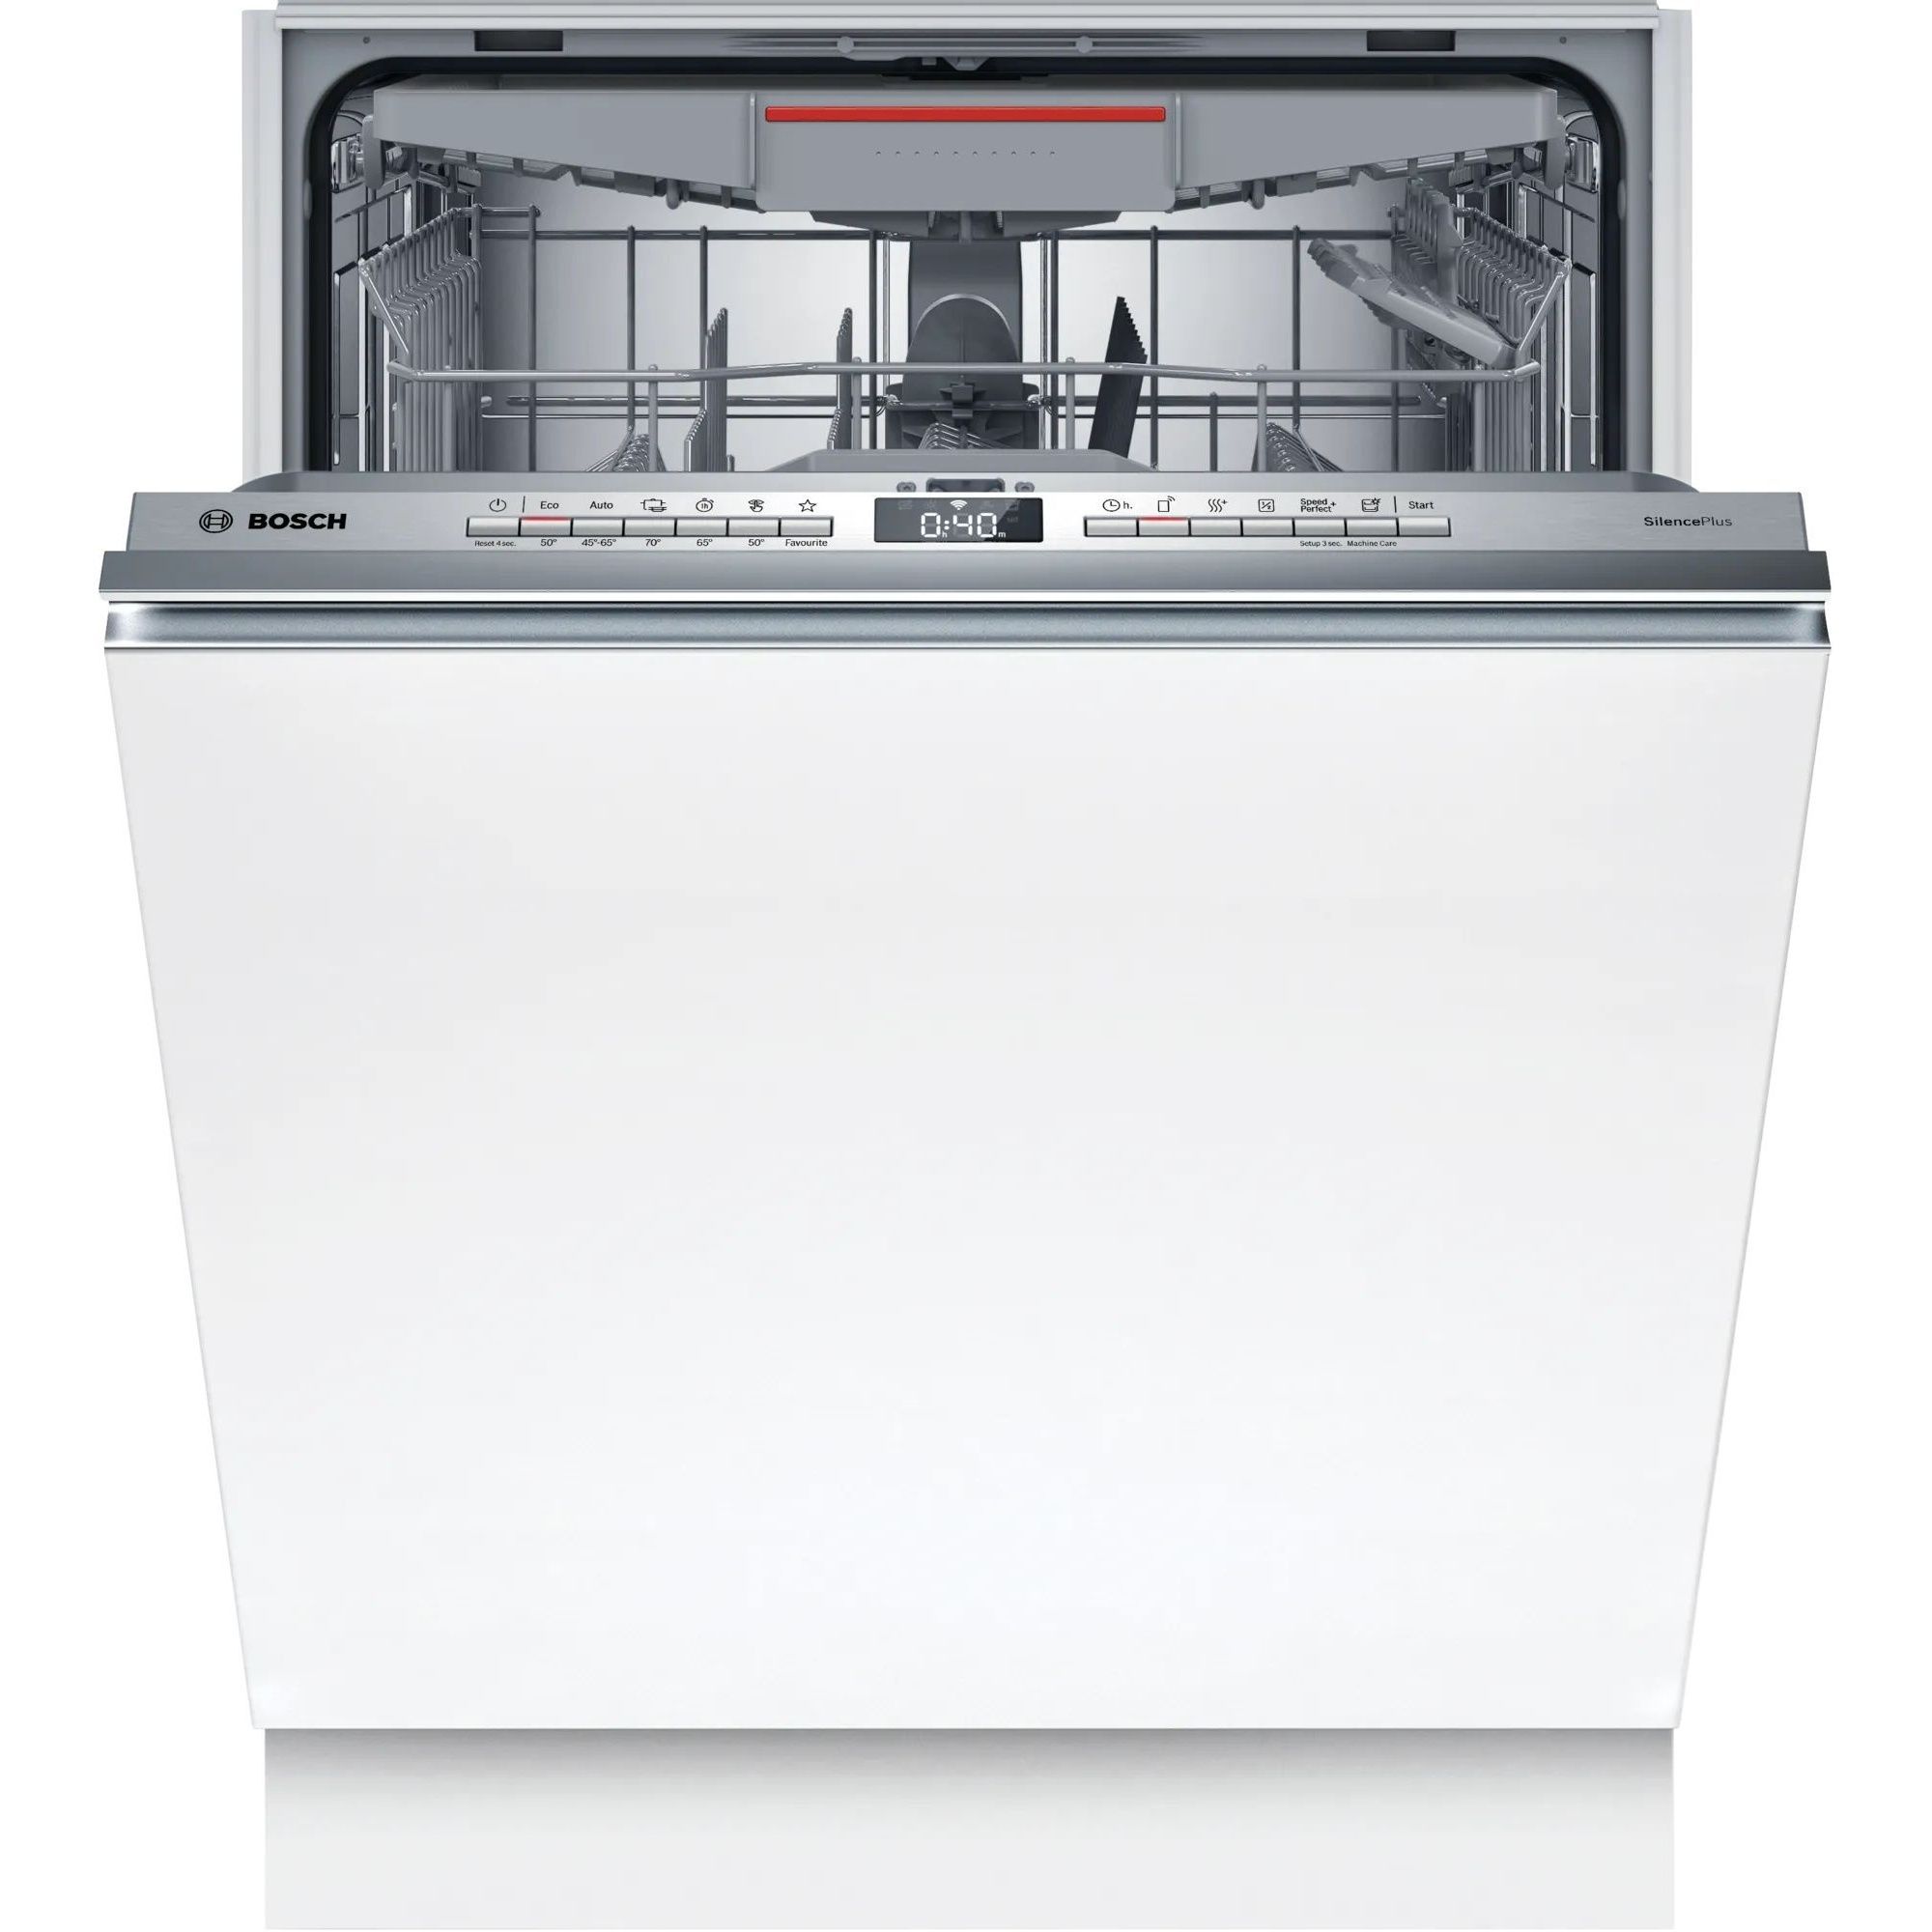 Лучшие посудомоечные машины встраиваемые отзывы. Bosch smv25bx02r. Посудомоечная машина Bosch spv2imy2er. Встраиваемая посудомоечная машина 60 см Bosch smv4iax3ir. Hansa Zim 4757 ev.